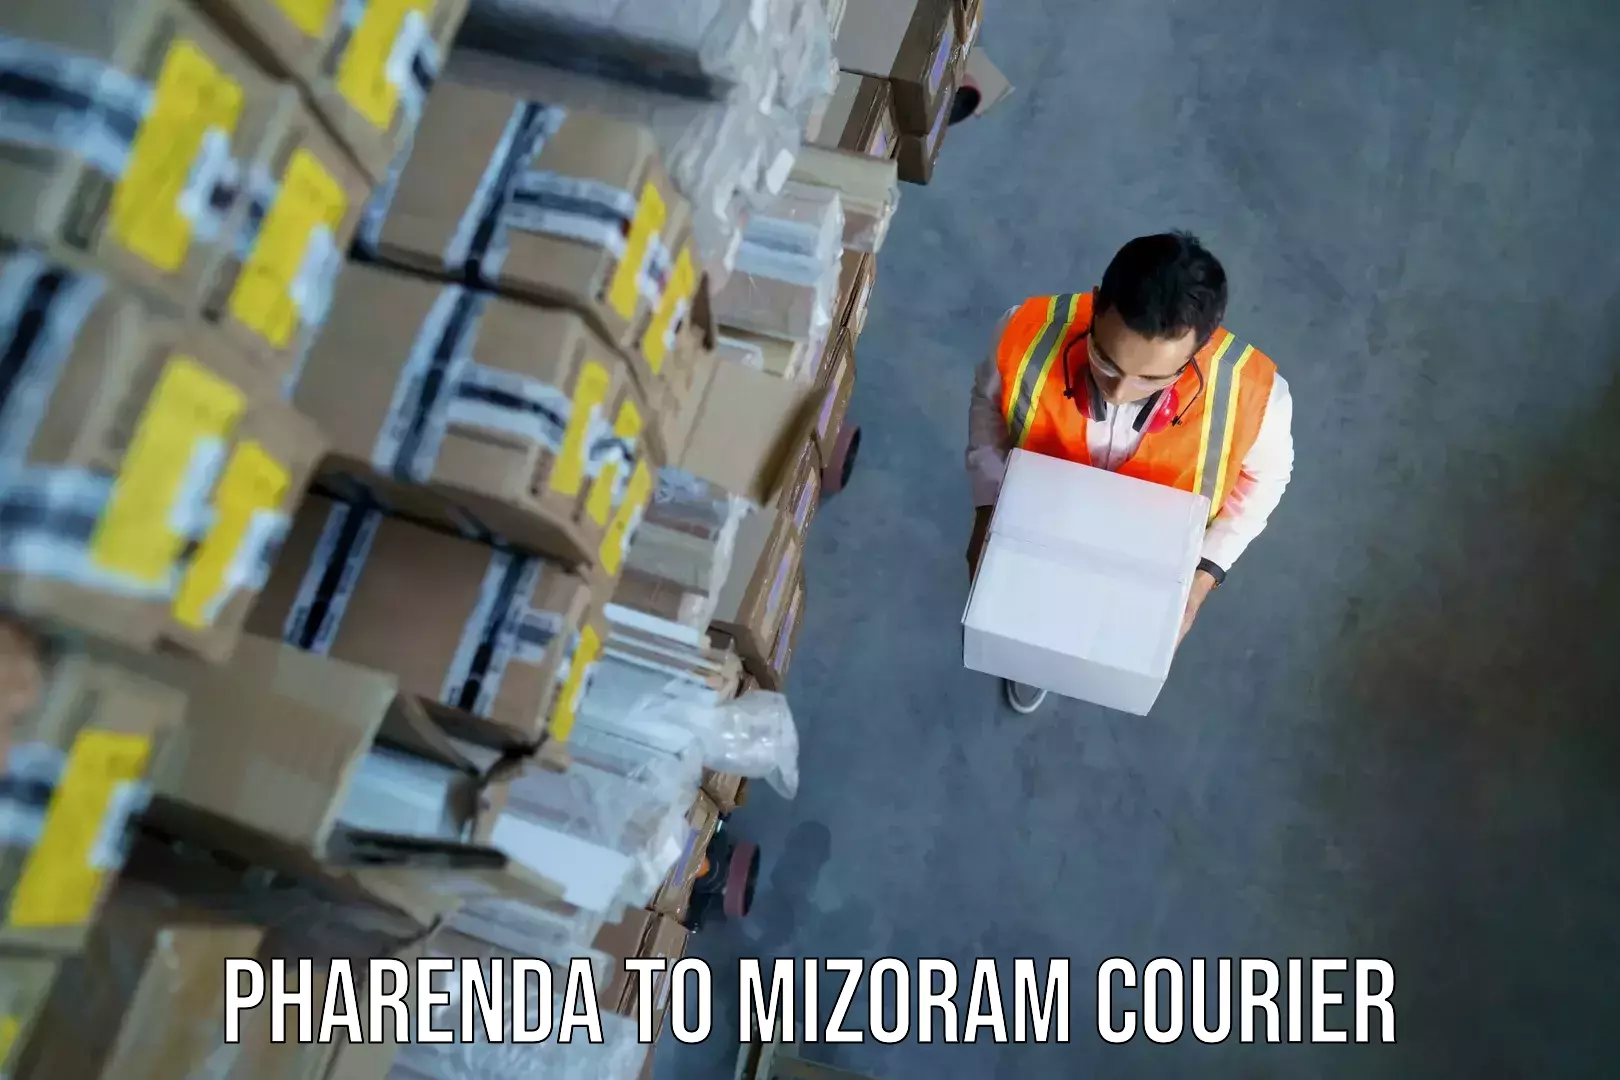 Baggage shipping experts Pharenda to Mizoram